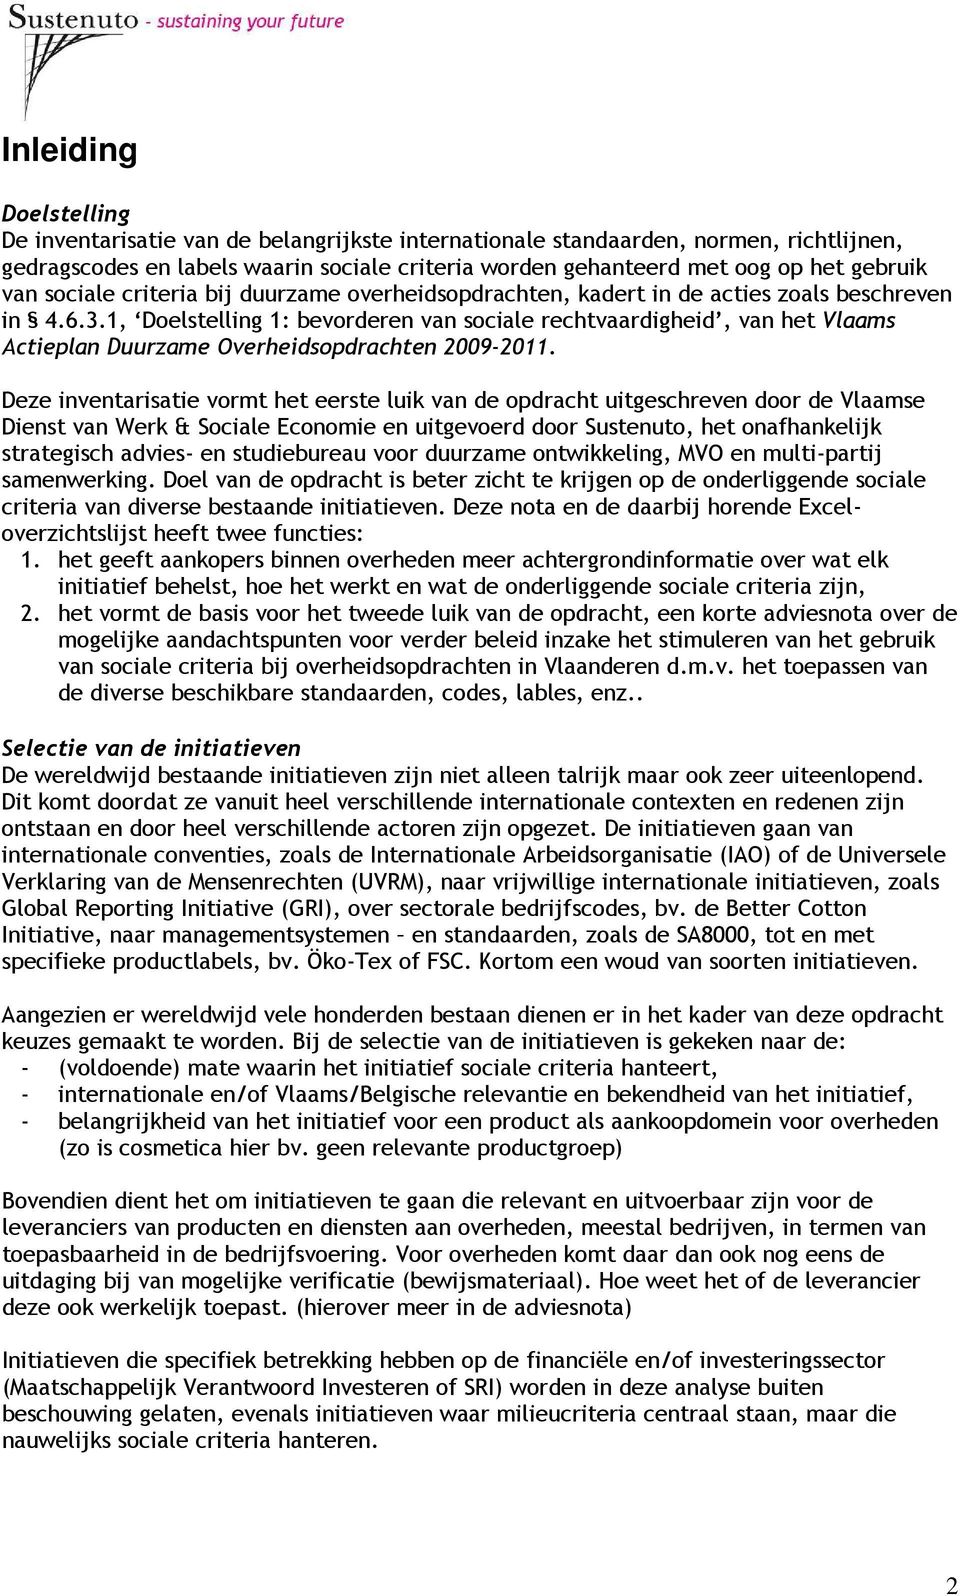 1, Doelstelling 1: bevorderen van sociale rechtvaardigheid, van het Vlaams Actieplan Duurzame Overheidsopdrachten 2009-2011.